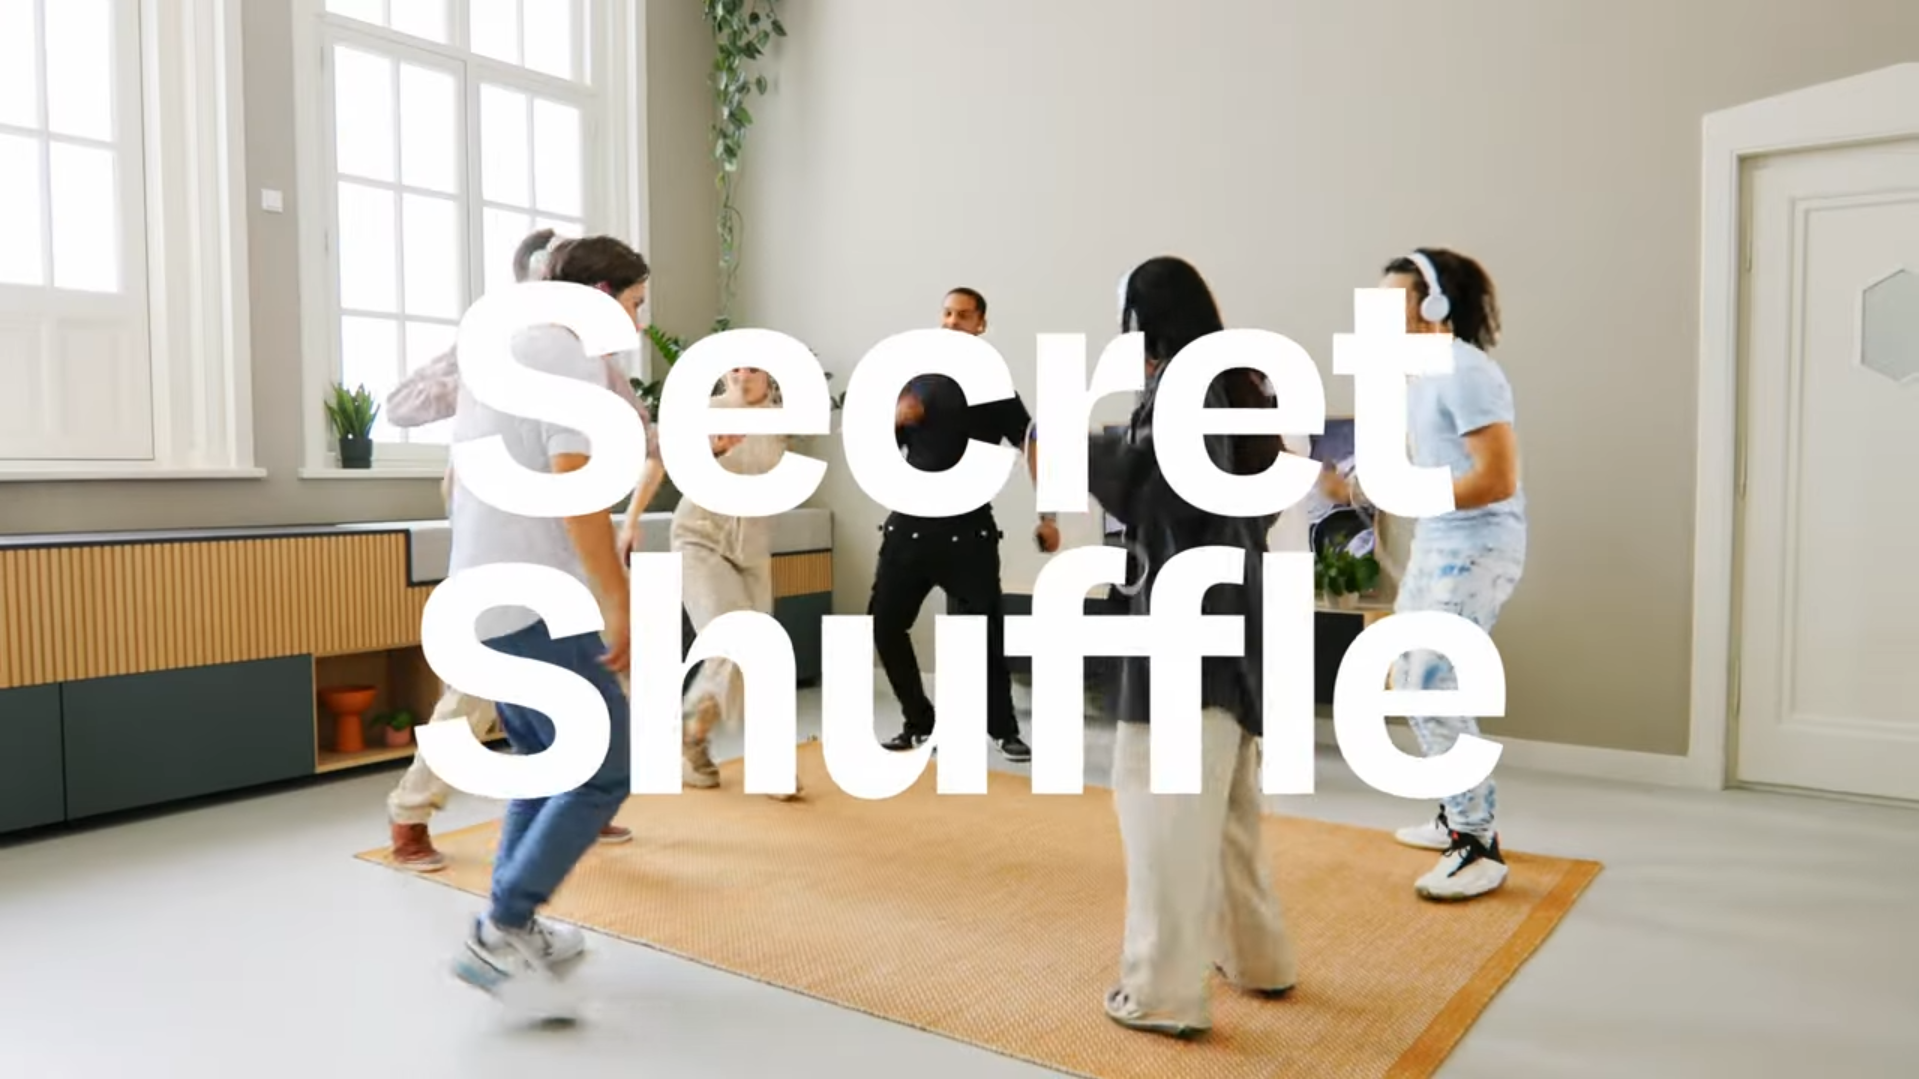 Secret Shuffle, совершенно новая игра для вечеринок, рассчитанная на 60 игроков, выйдет на следующей неделе